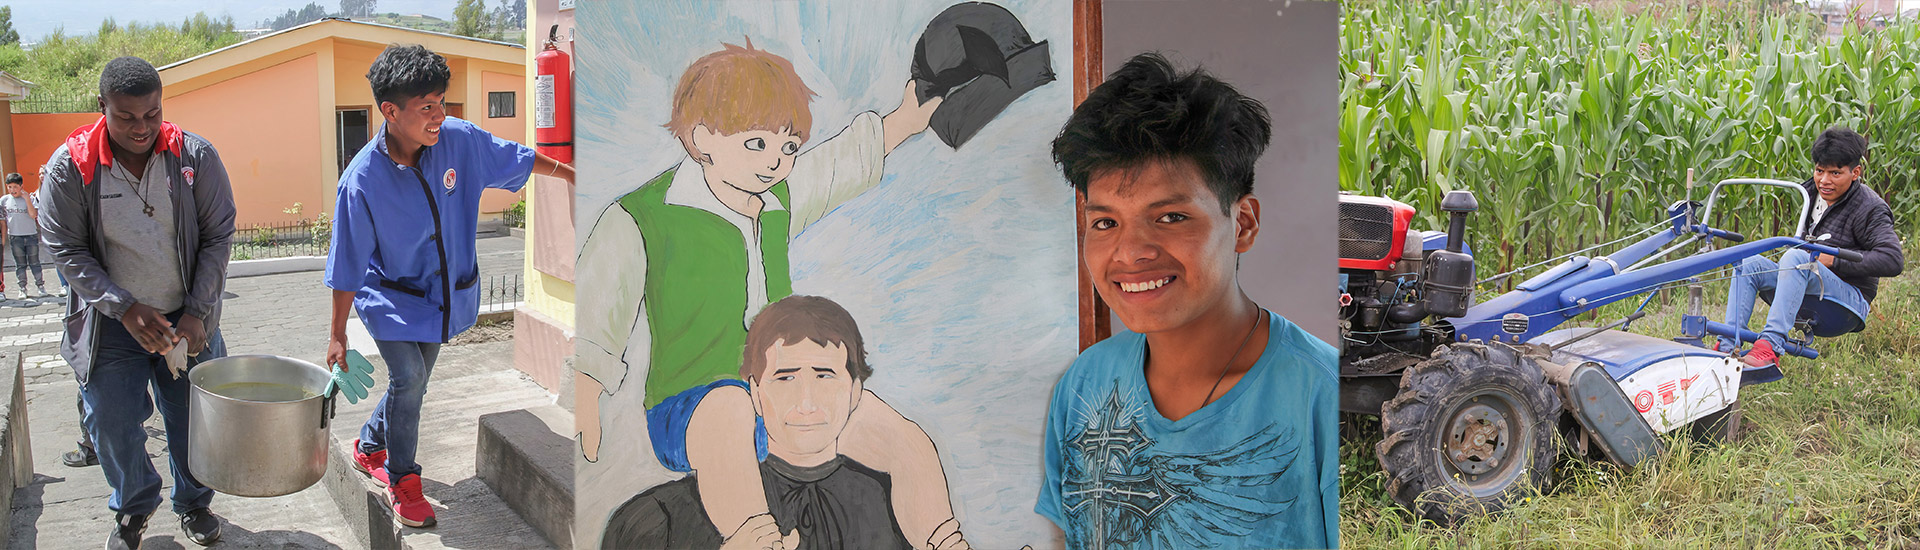 Álex, un gran soñador en la amplia familia de menores que forman la Granja Escuela Don Bosco en Ambato (Ecuador)